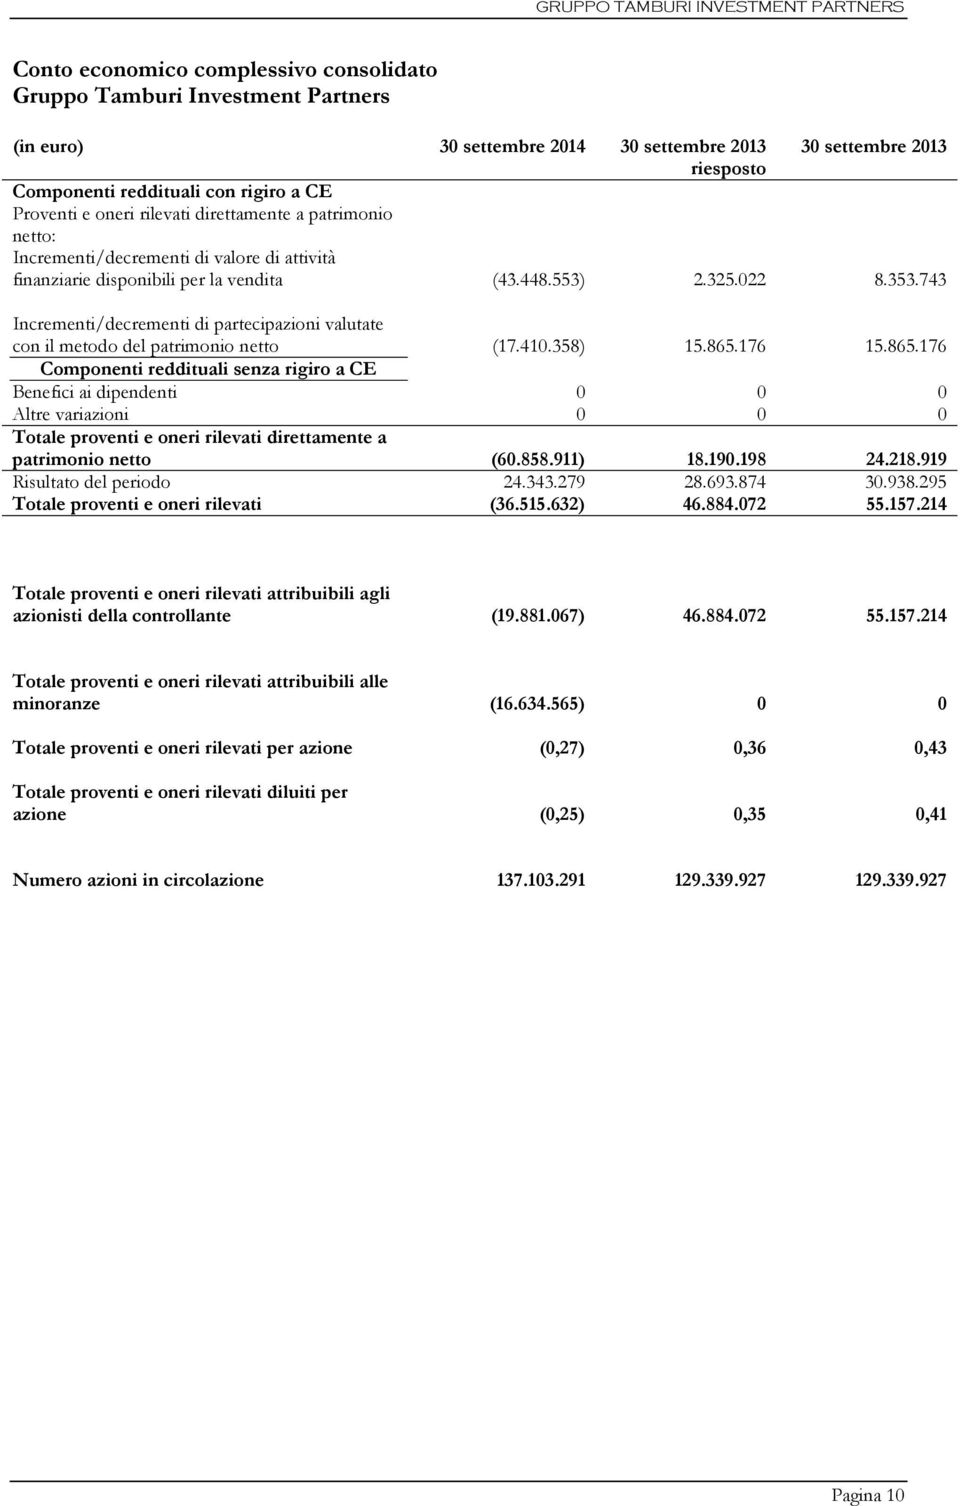 743 Incrementi/decrementi di partecipazioni valutate con il metodo del patrimonio netto (17.410.358) 15.865.